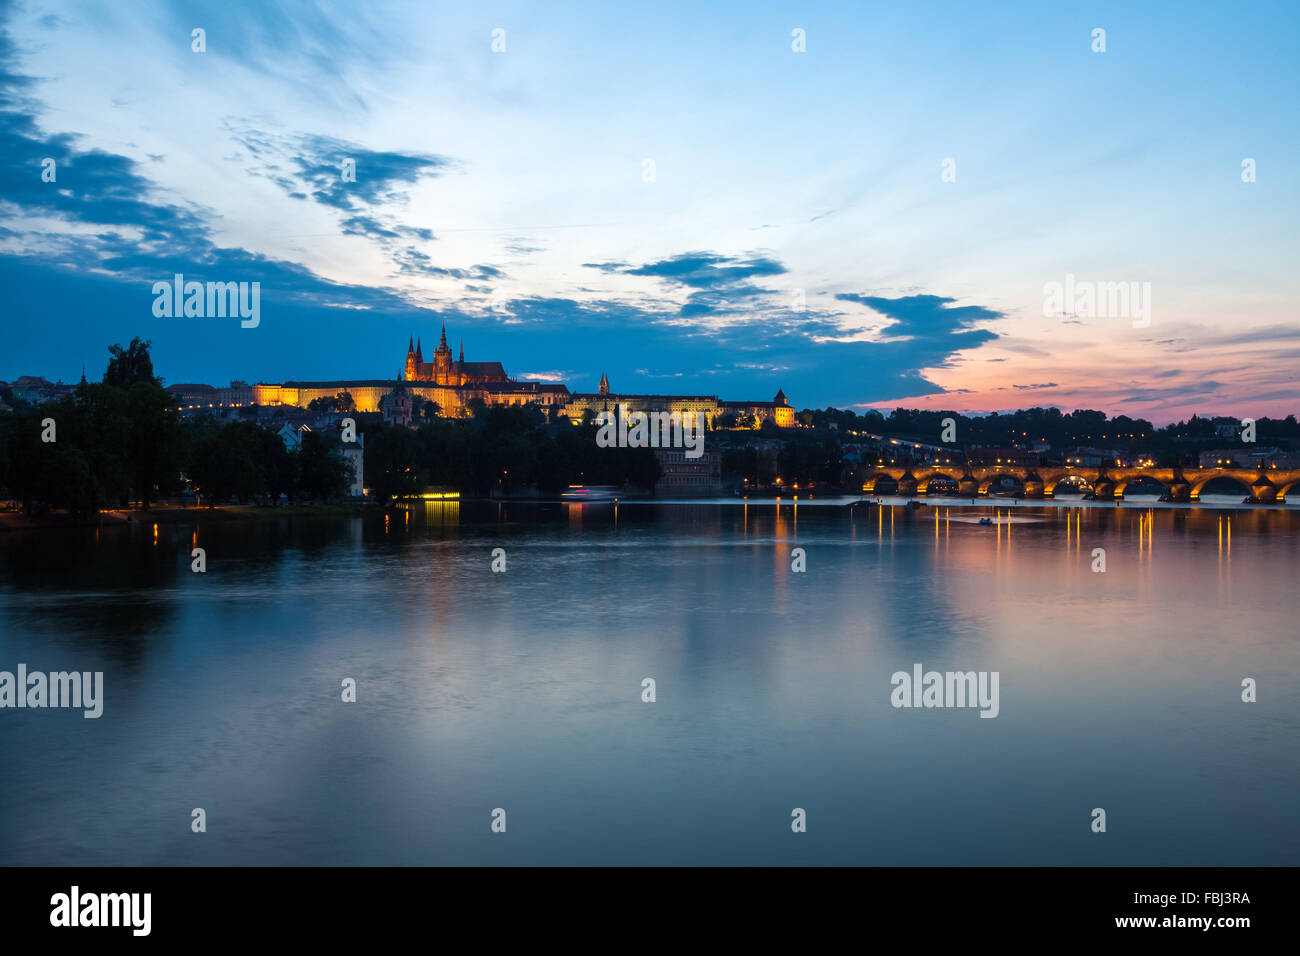 Tourismus und Sehenswürdigkeiten, Blick über bemerkenswerte Anblick der Prager Karlsbrücke und Burgviertel. Gutes Wetter, Sommernacht, ca Stockfoto